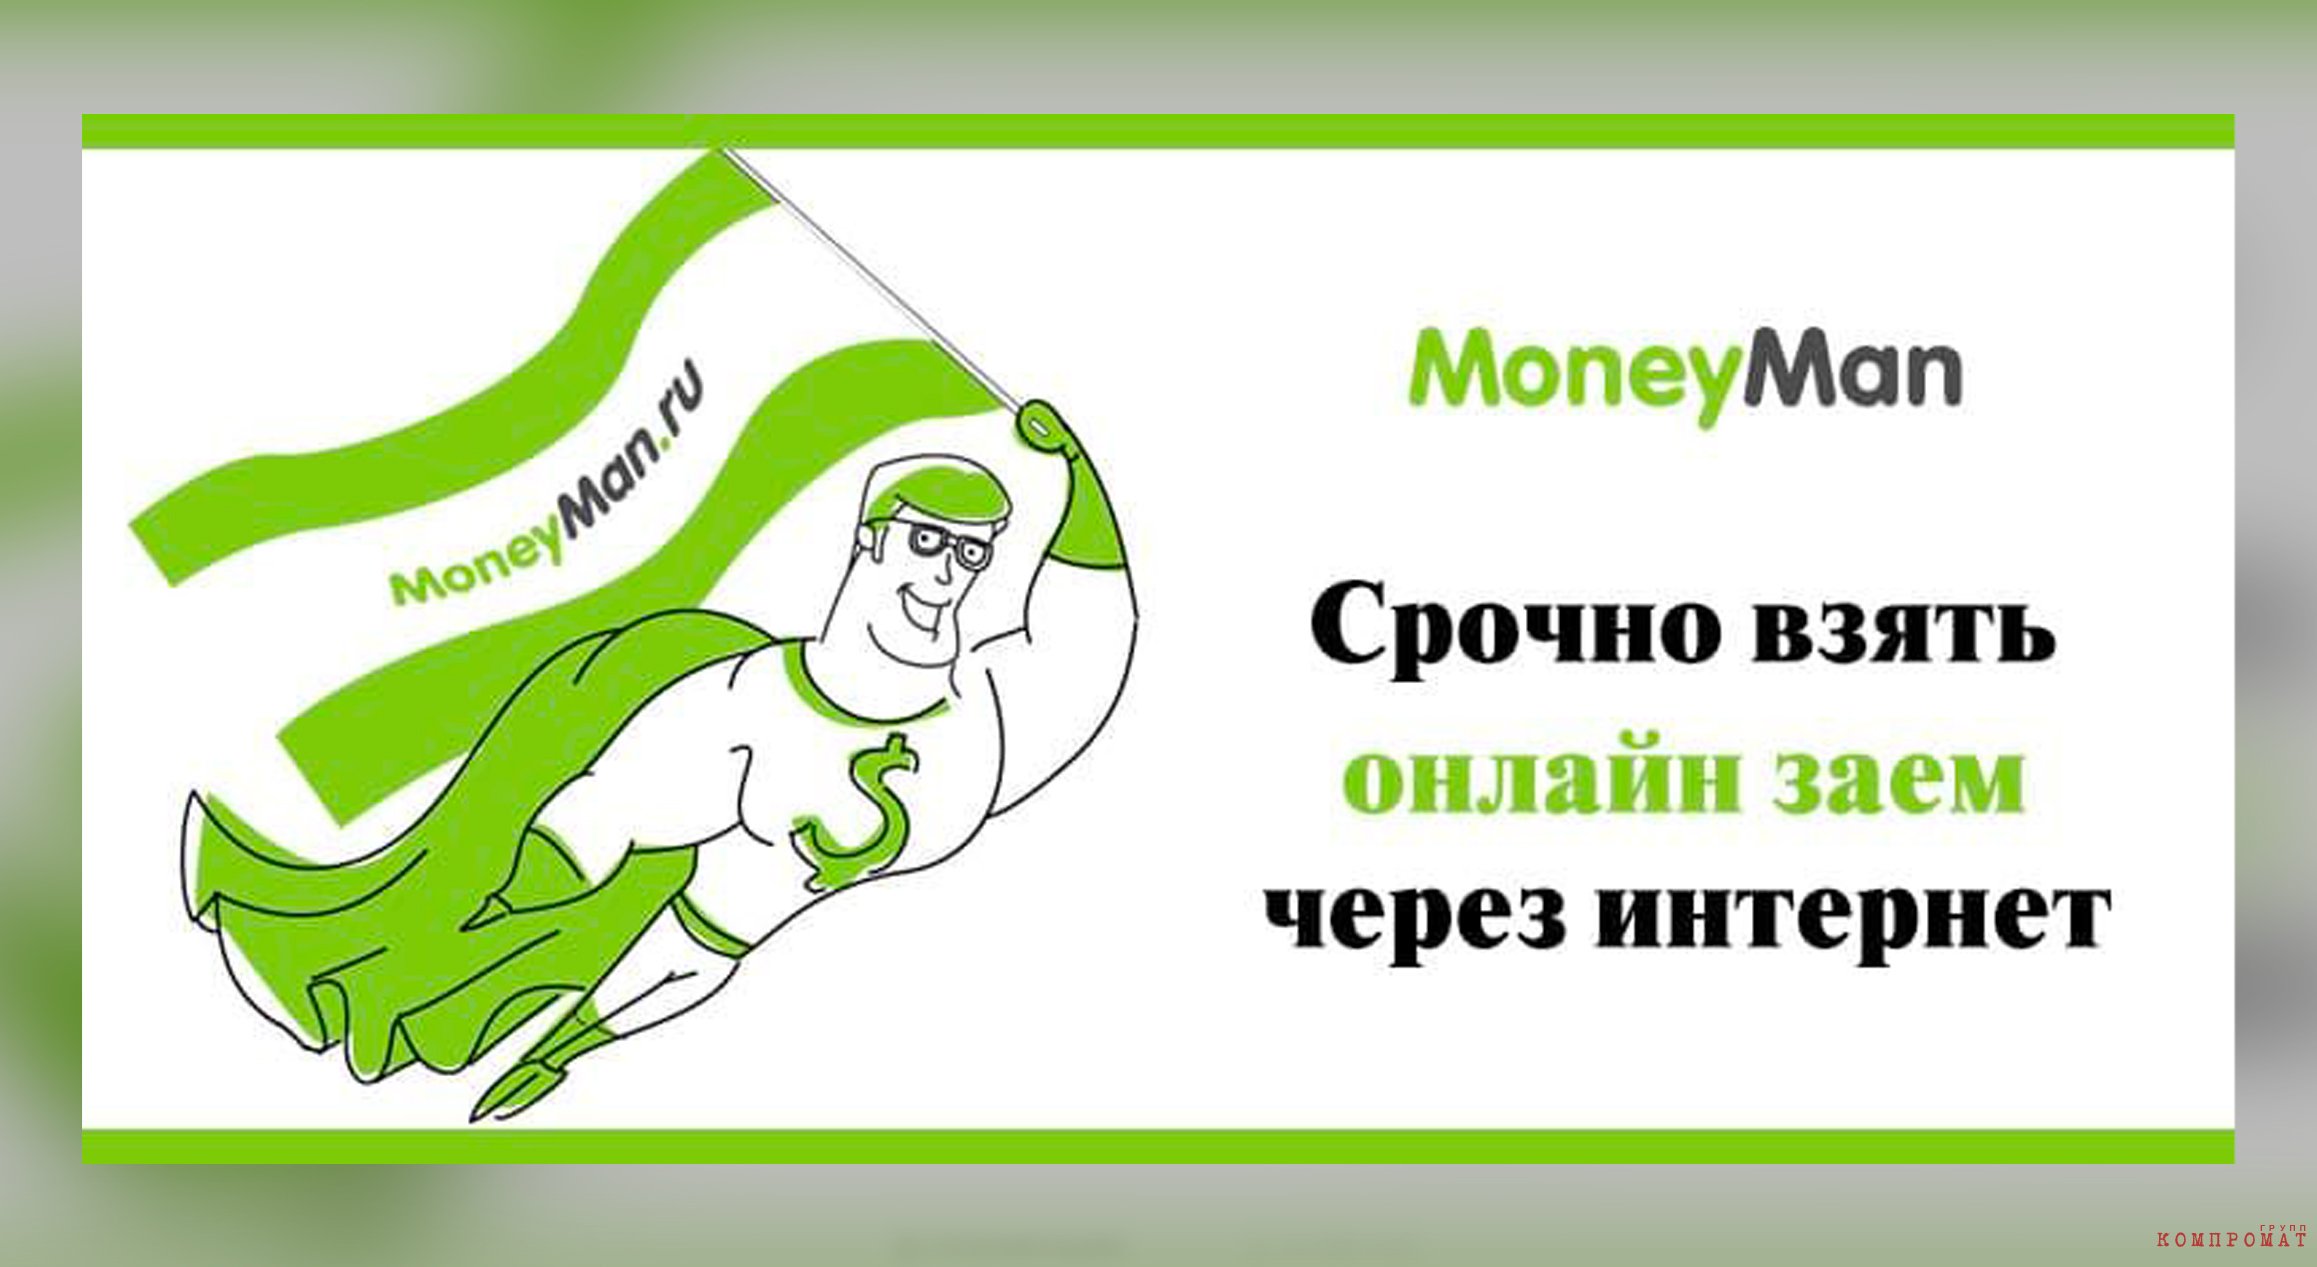  MoneyMan —   ,  ,  queiqkxihxirx eiqeuihqidqzatf